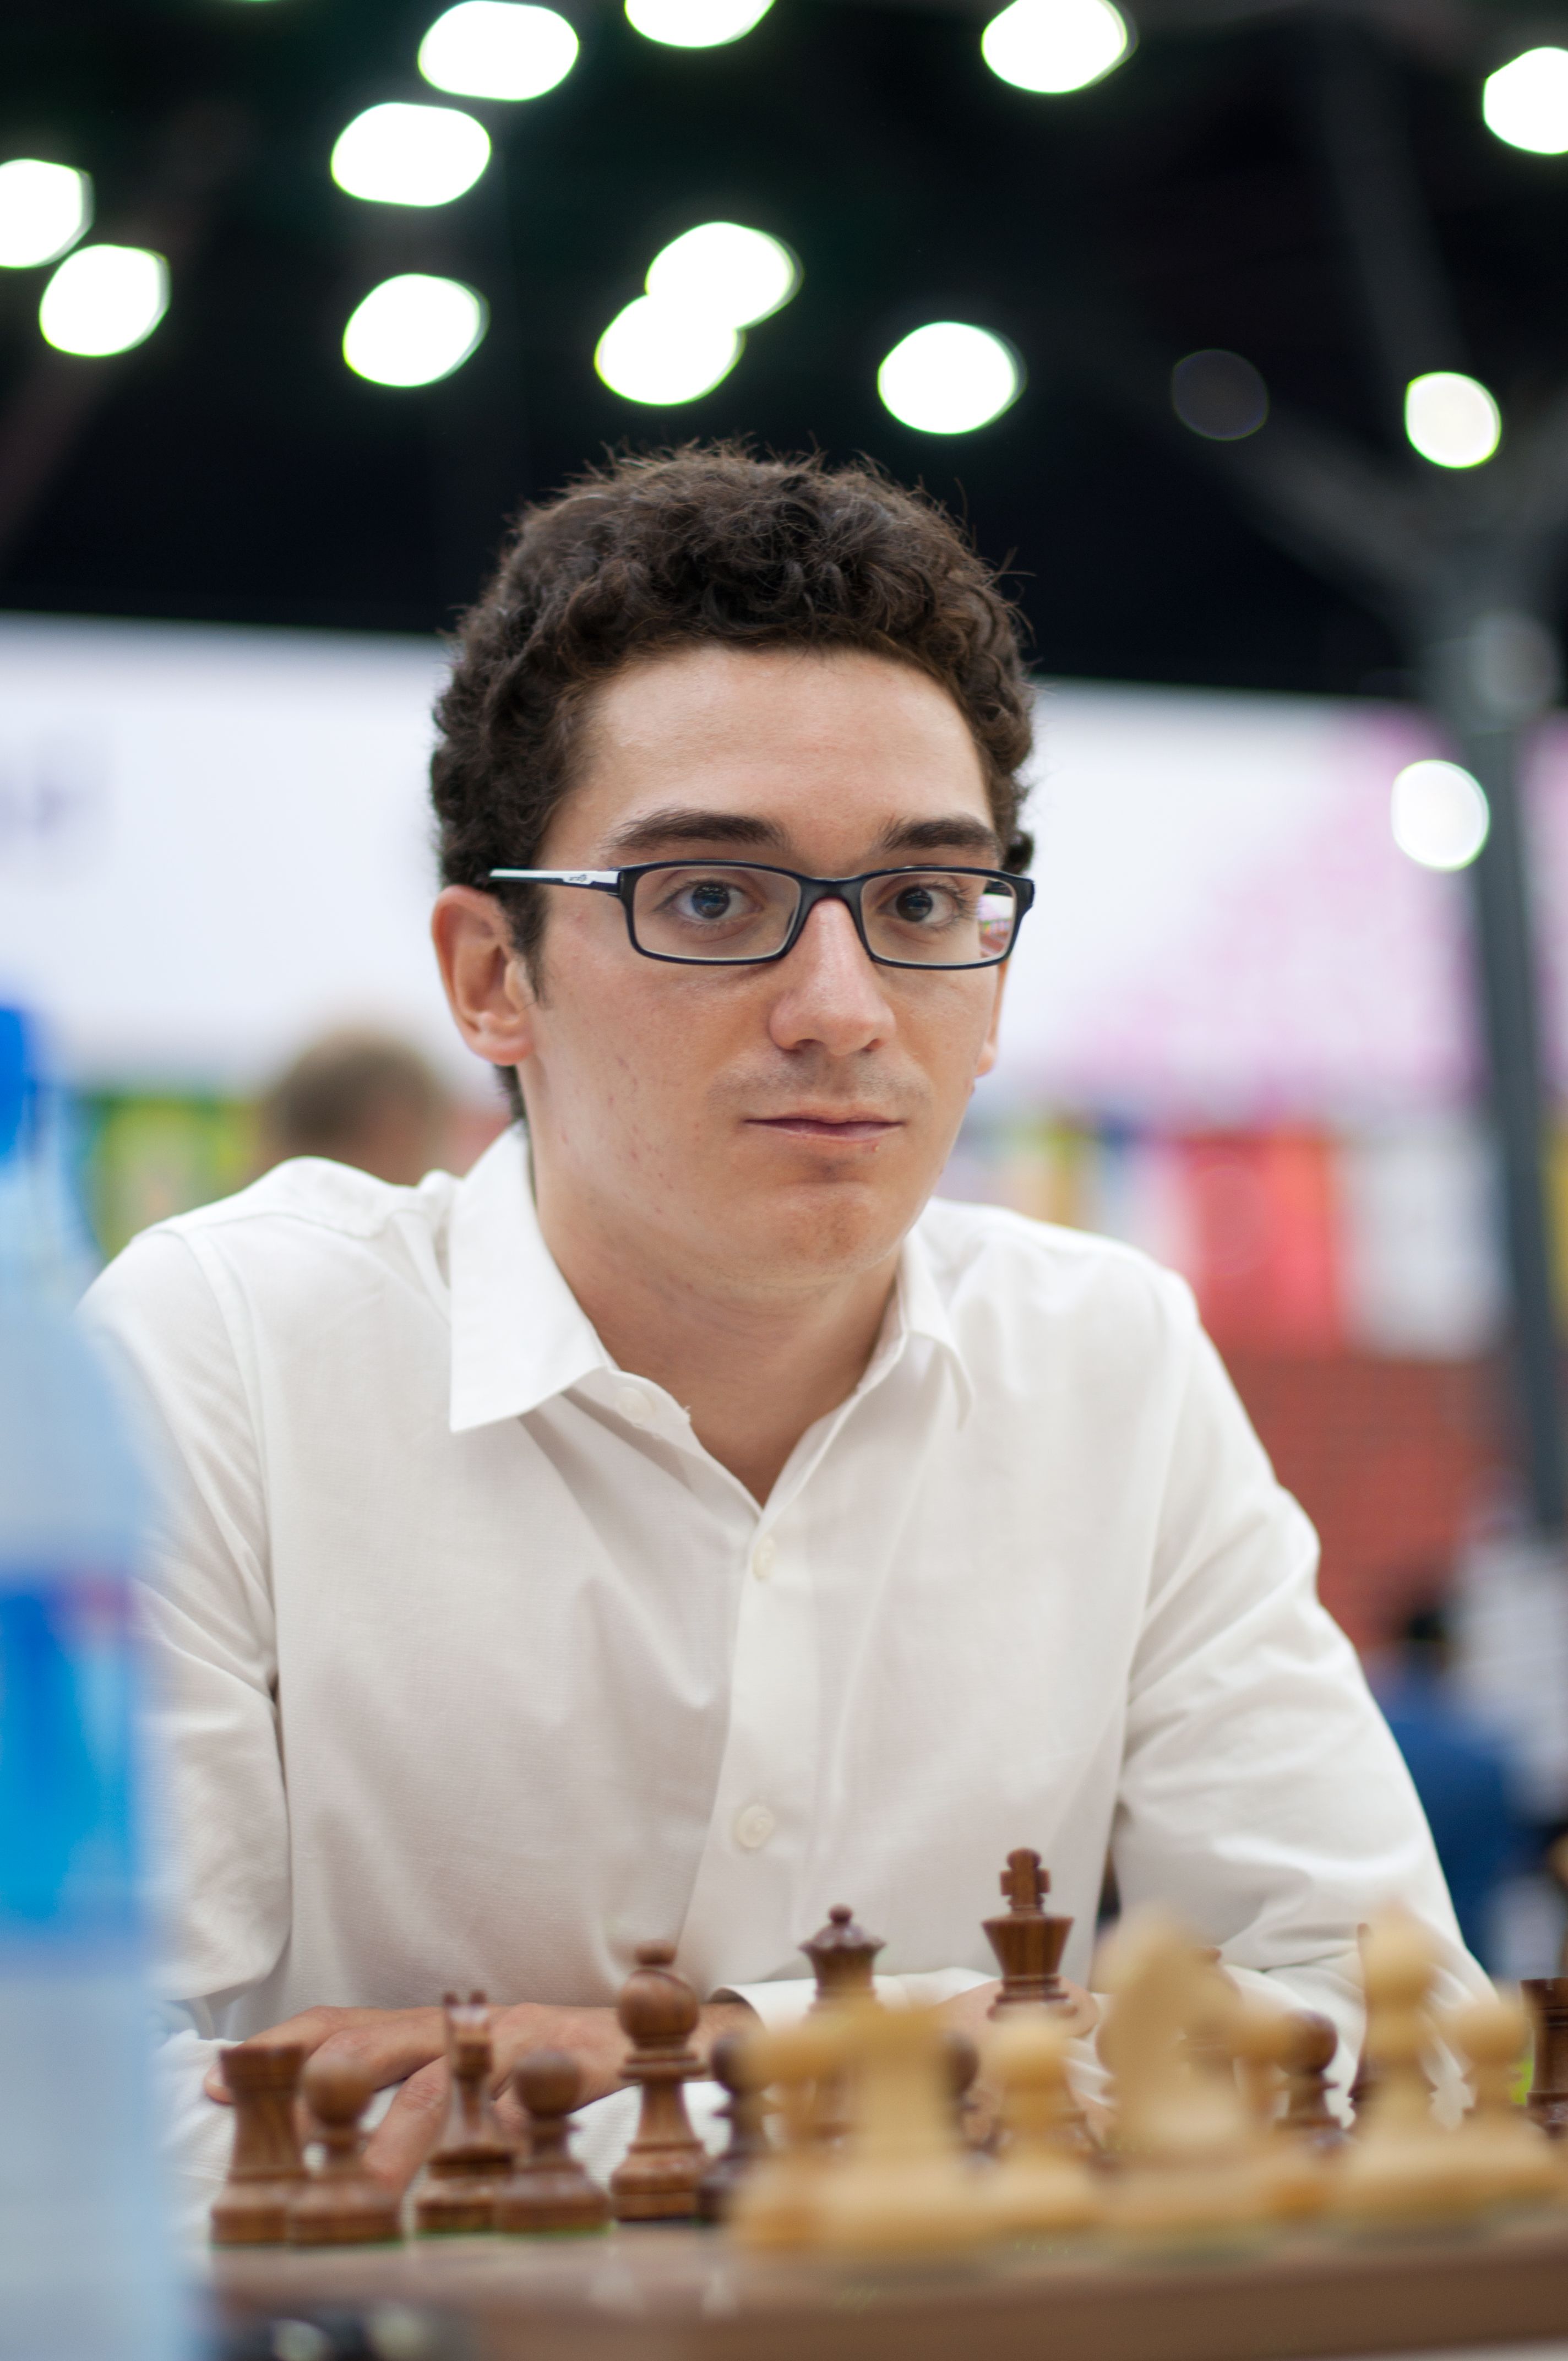 Fabiano Caruana player profile